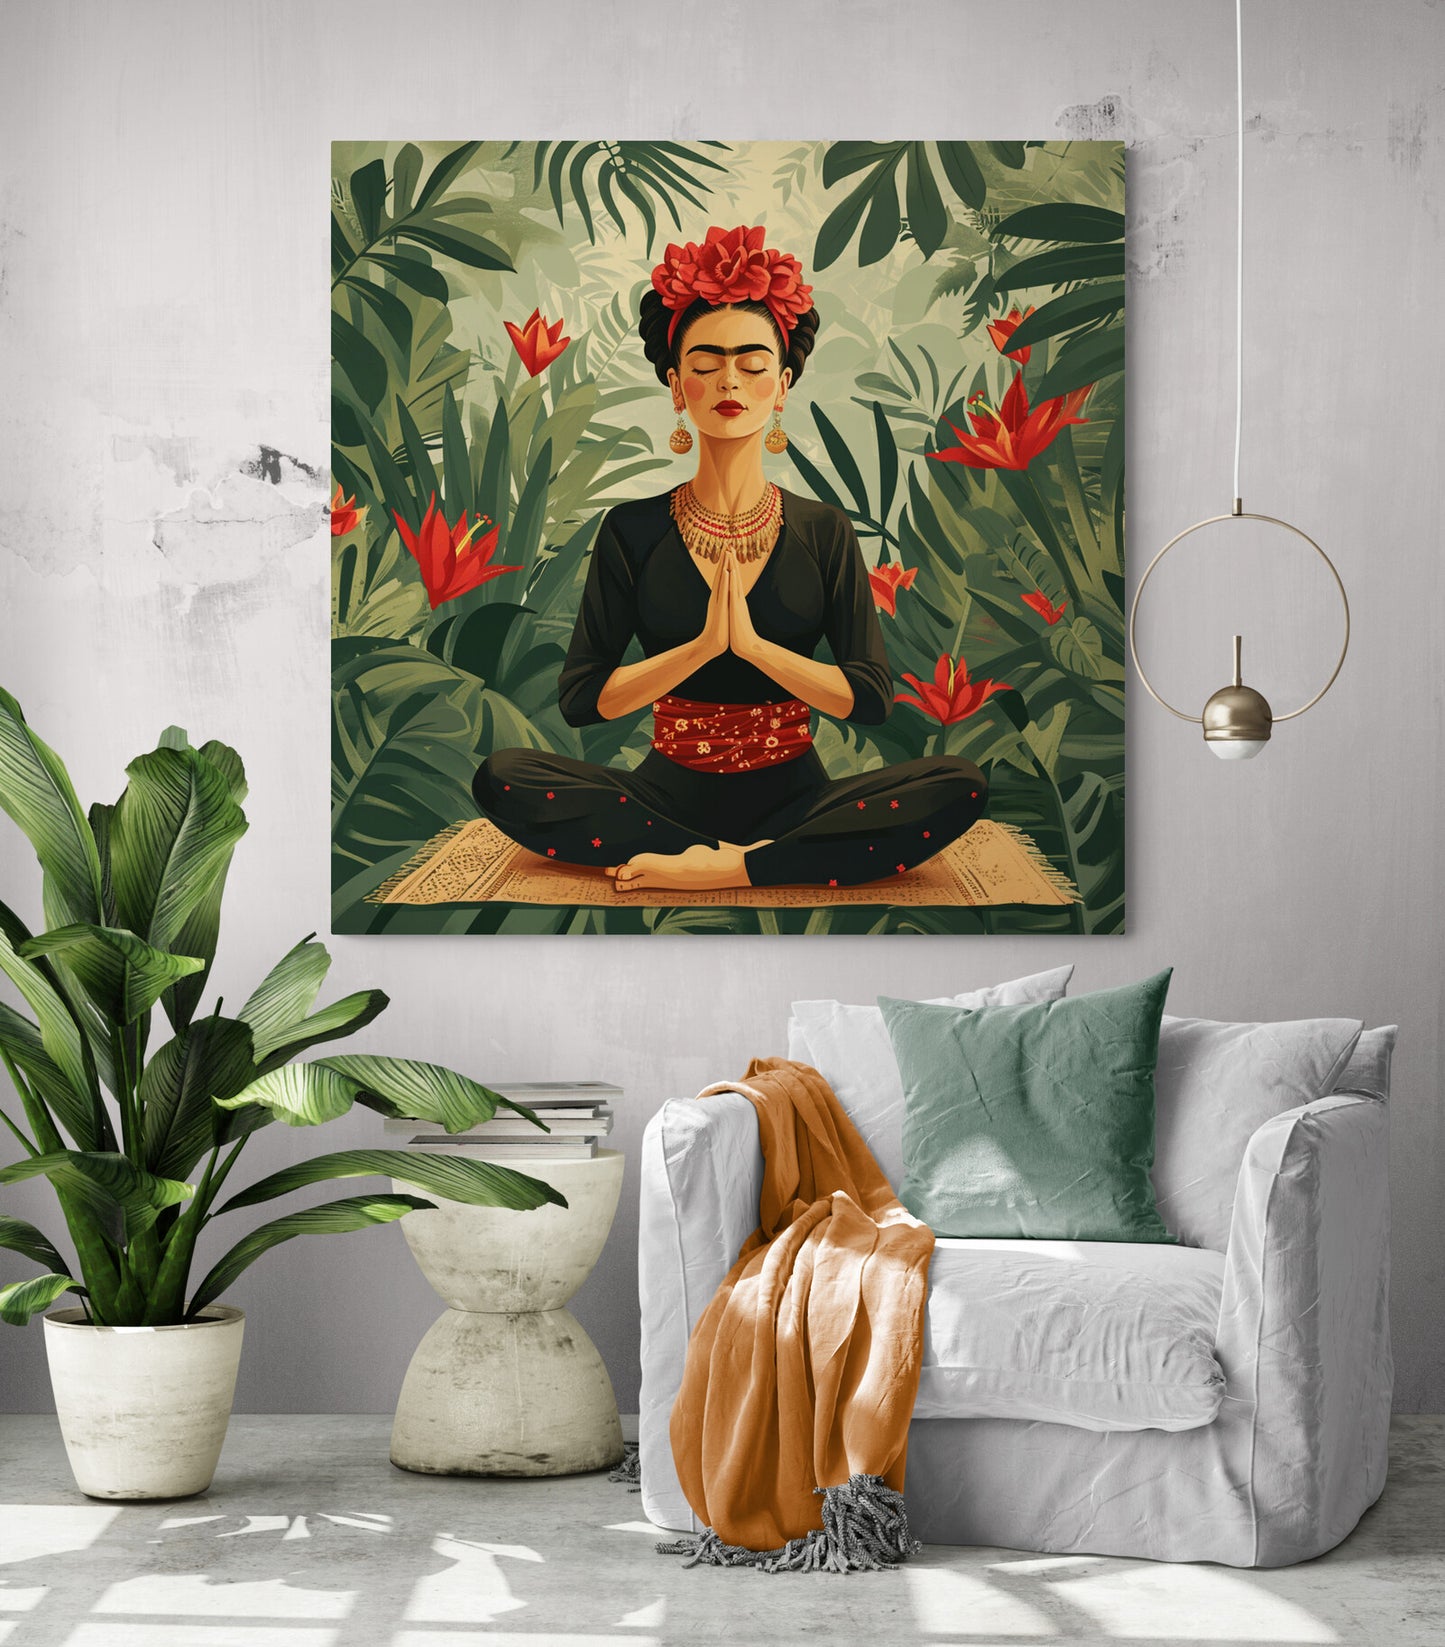 Décoration salon moderne, tableau Frida Kahlo zen, plante verte luxuriante, jeté canapé orange